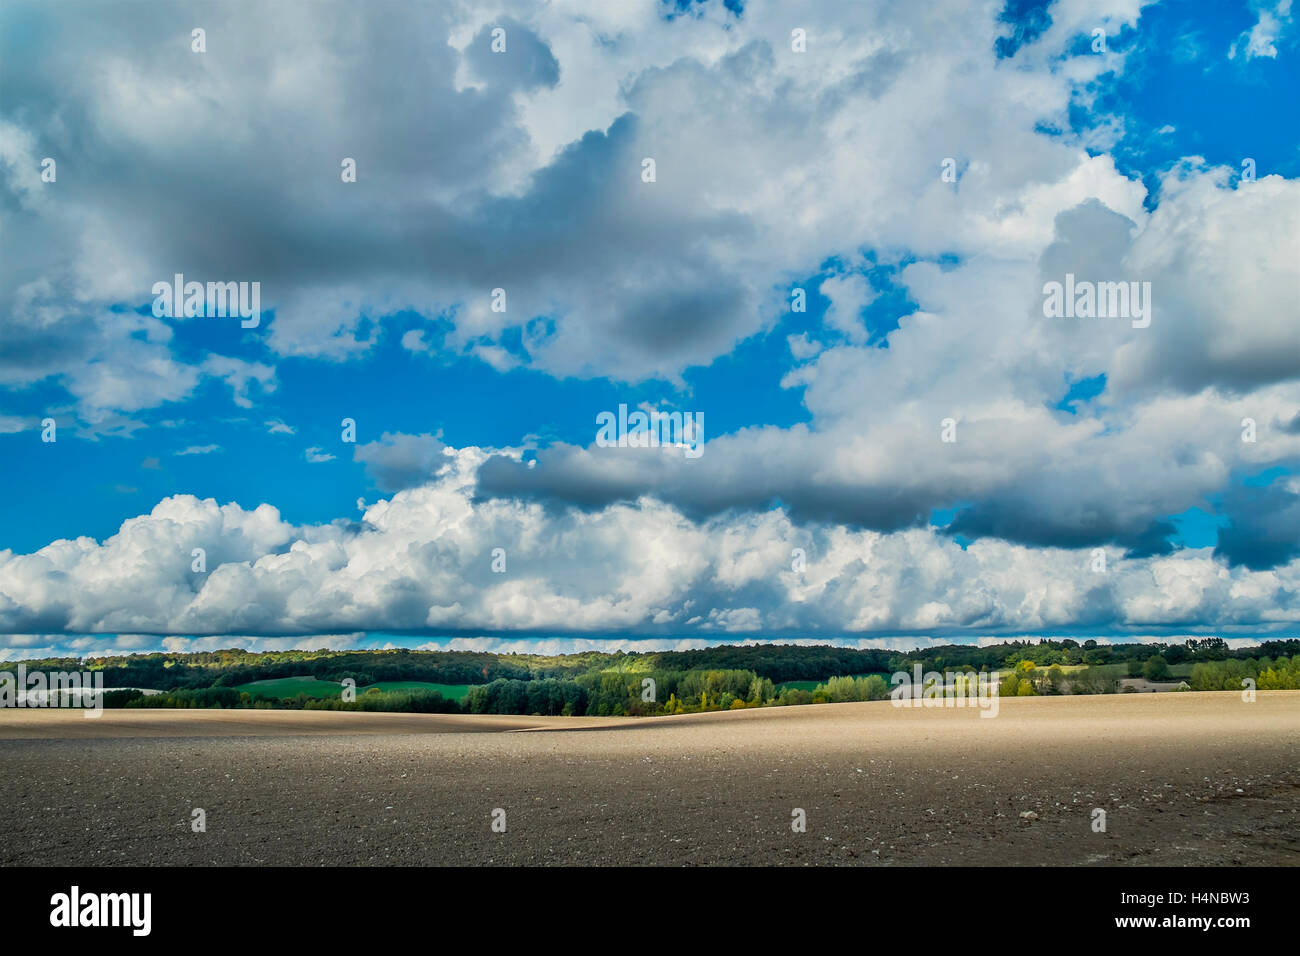 Sommerhimmel mit Cumulus und Cumulonimbus Calvus regen Wolken - Frankreich. Stockfoto